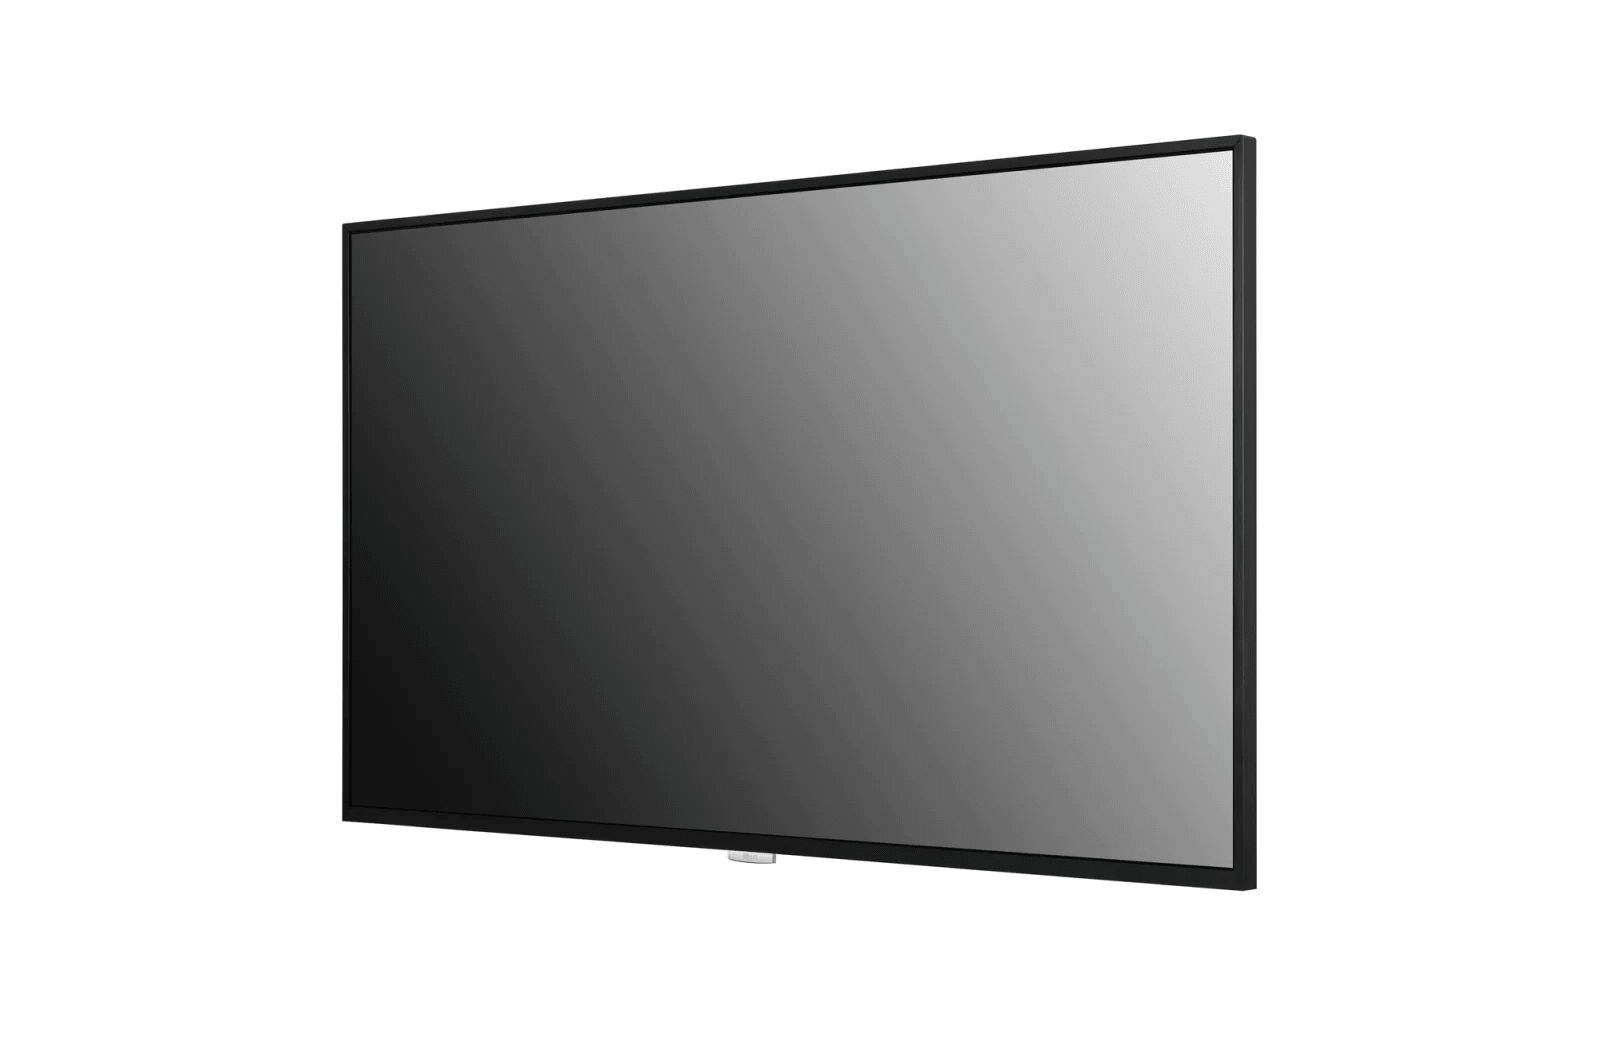 LG Professional TV UH5F Series - 43" / 49" / 55" / 65" / 98" - 500 nits, 4K, 24x7